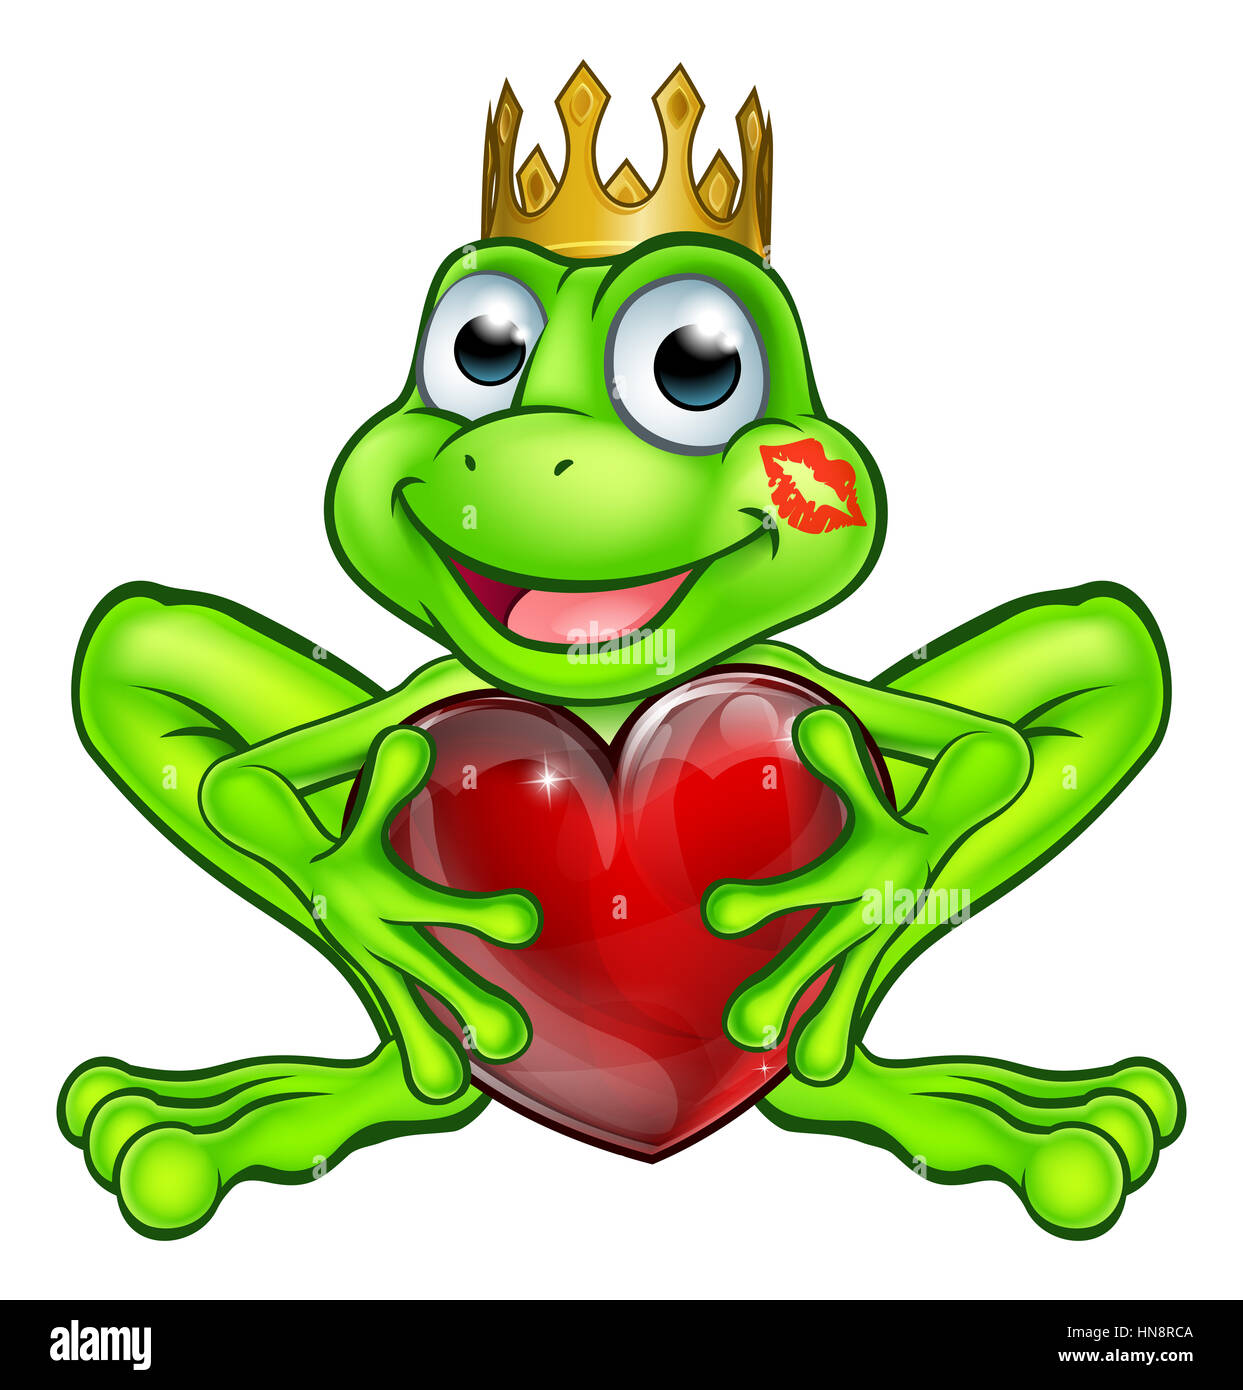 Cartoon Frosch Prinz Märchen Maskottchen Charakter Weringa goldene Krone und hält die Form eines Herzens mit einem Lippenstift küssen Mark auf seinem Gesicht Stockfoto